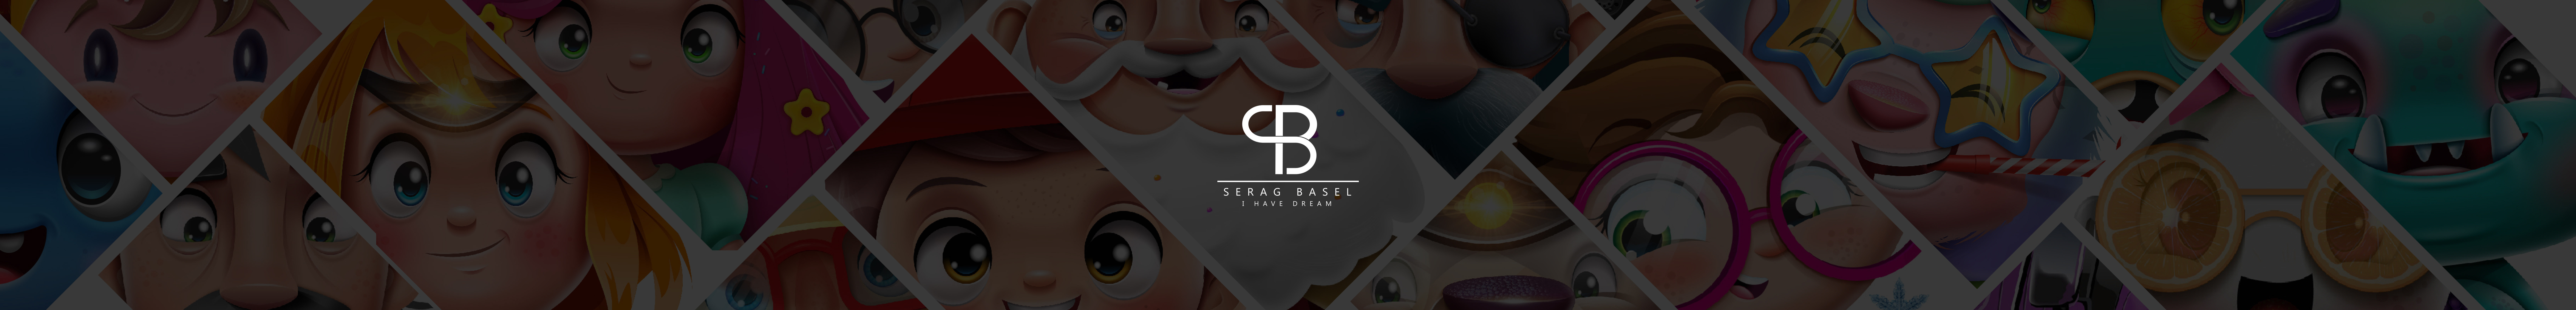 Banner profilu uživatele serag basel™